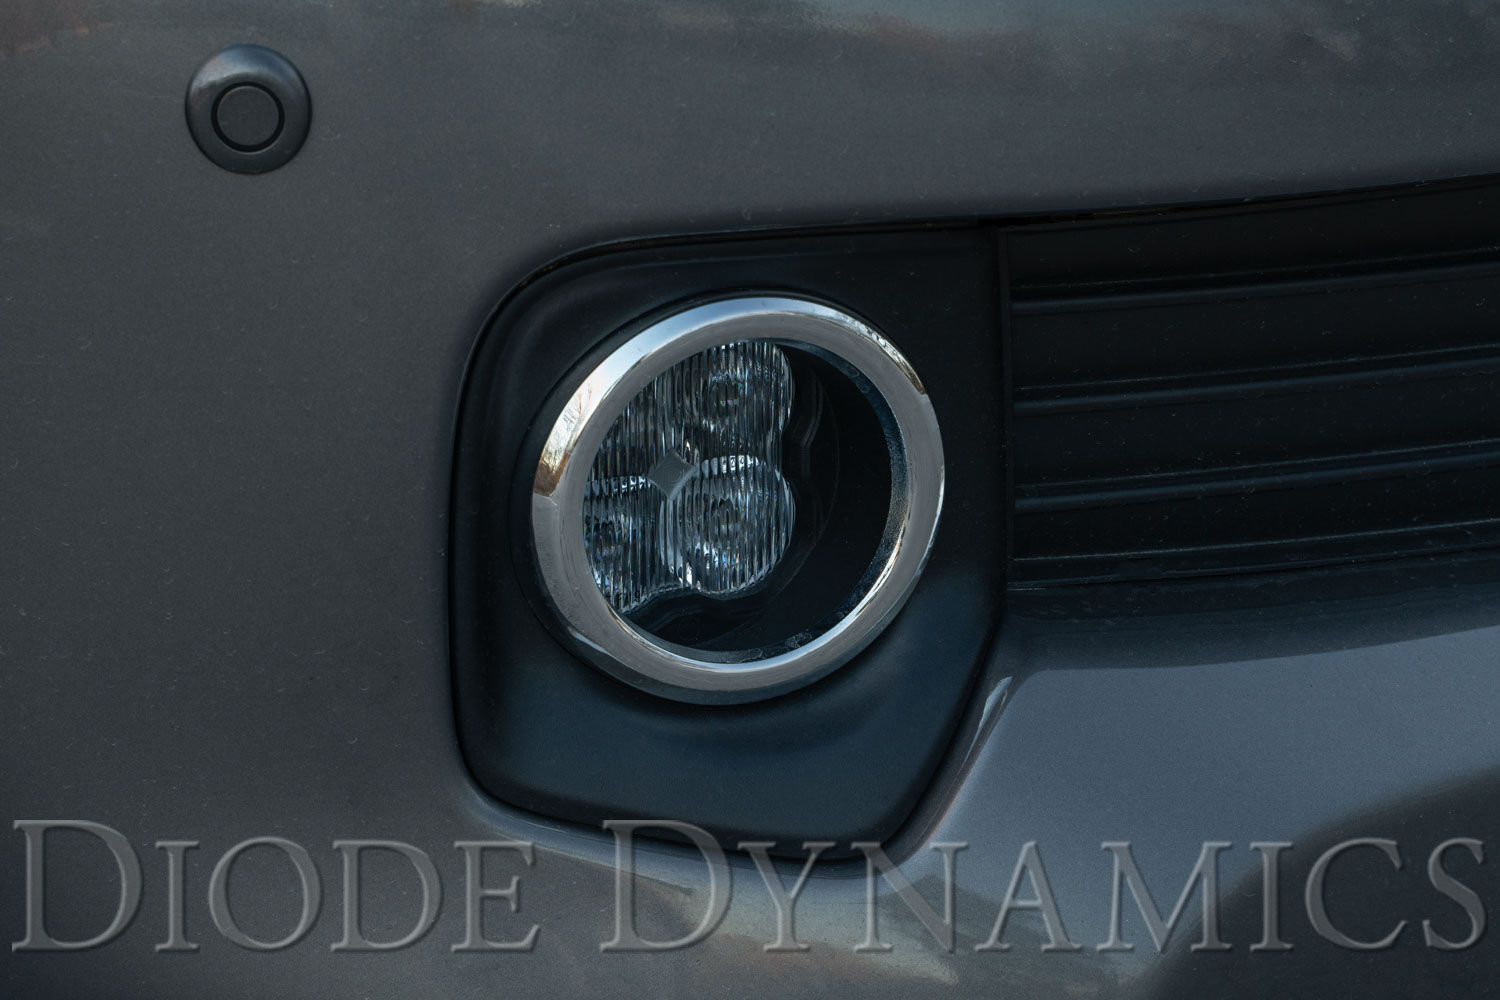 SS3 LED Fog Light Kit for 2012-2014 Toyota Prius Diode Dynamics-